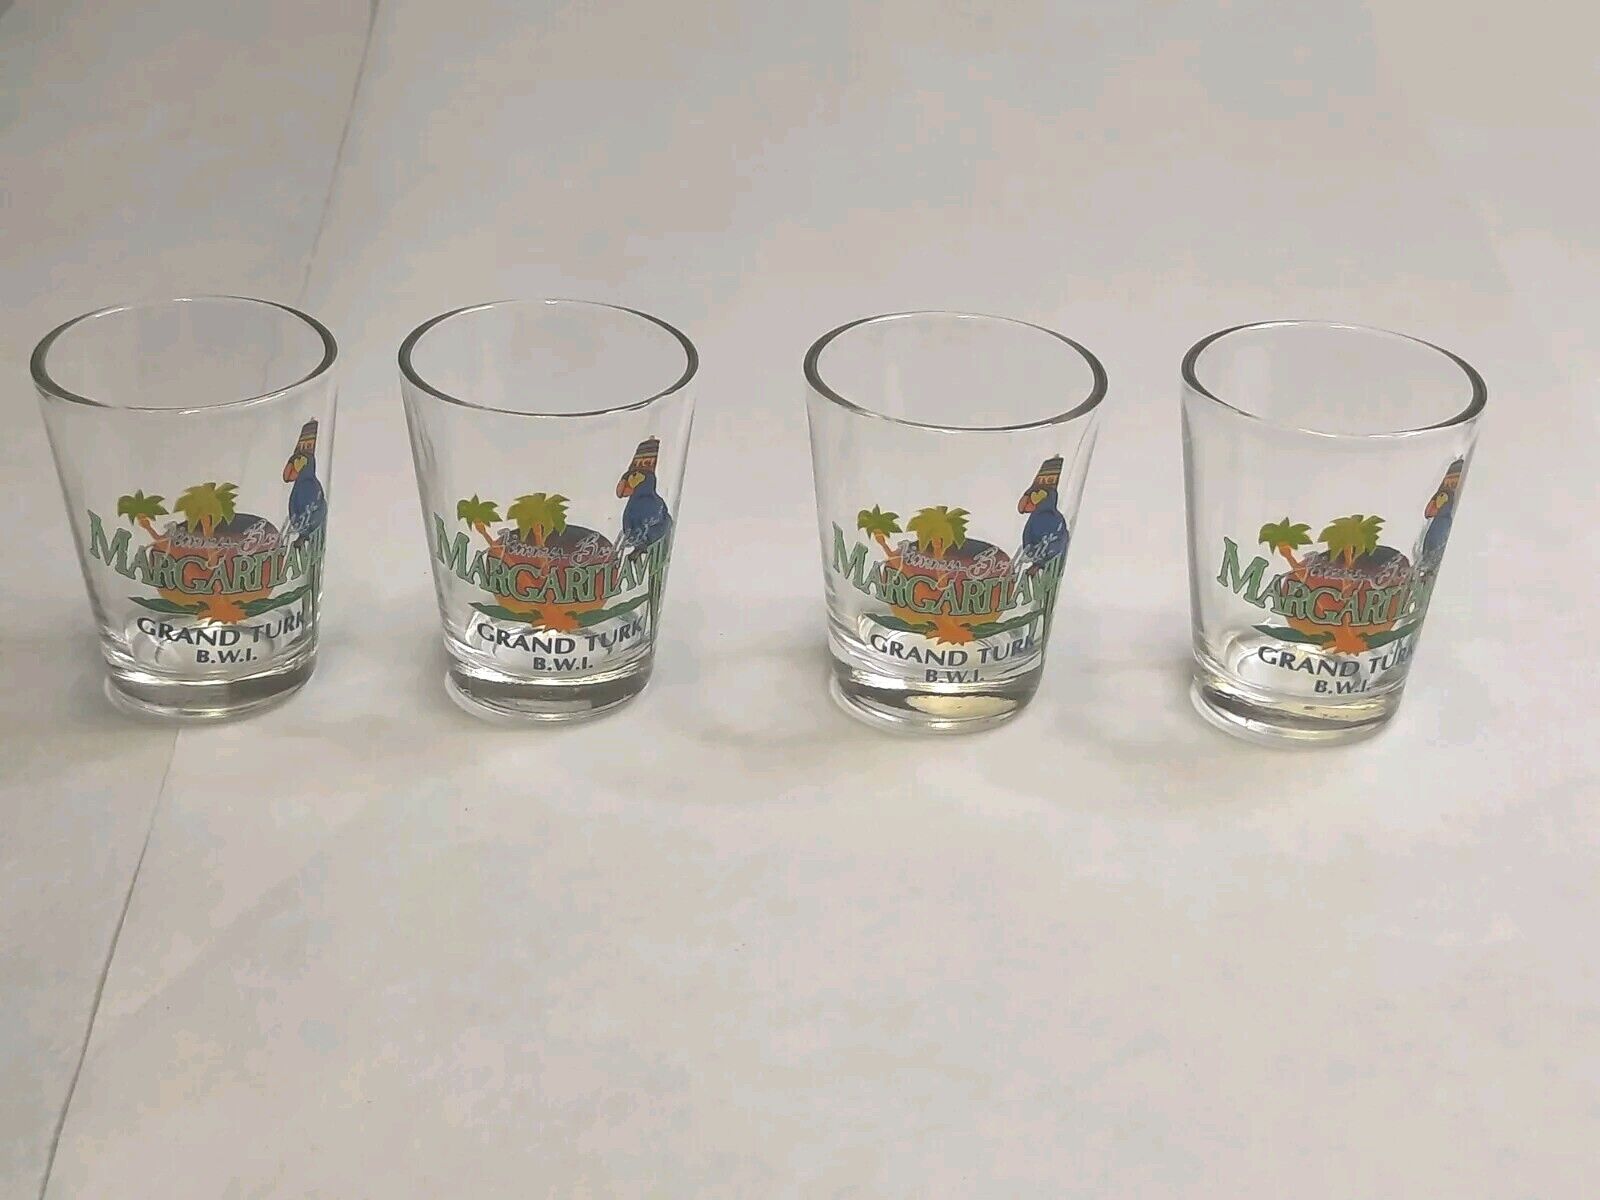 Margaritaville Grand Turk B.W.I. Shot Glass Lot Of 4 Glasses